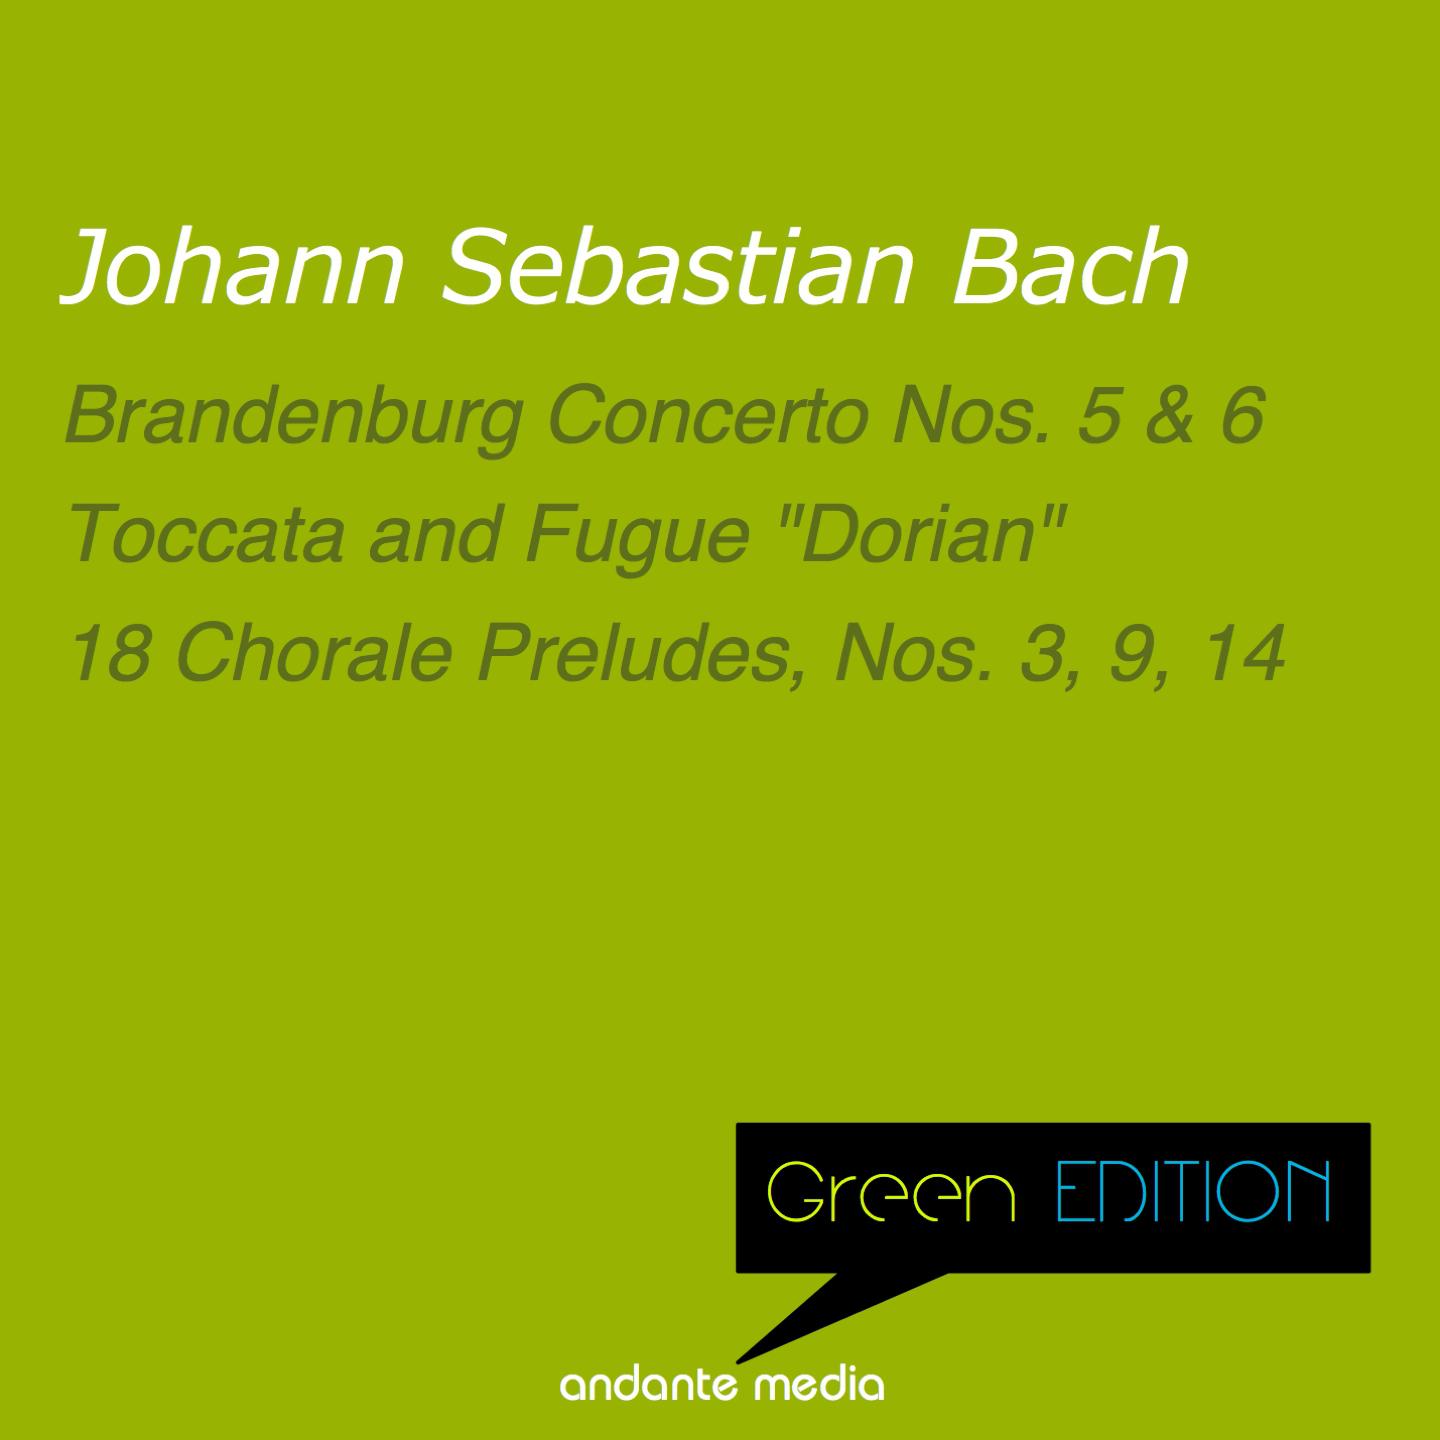 18 Chorale Preludes, No. 9, Nun komm' der Heiden Heiland, BWV 659